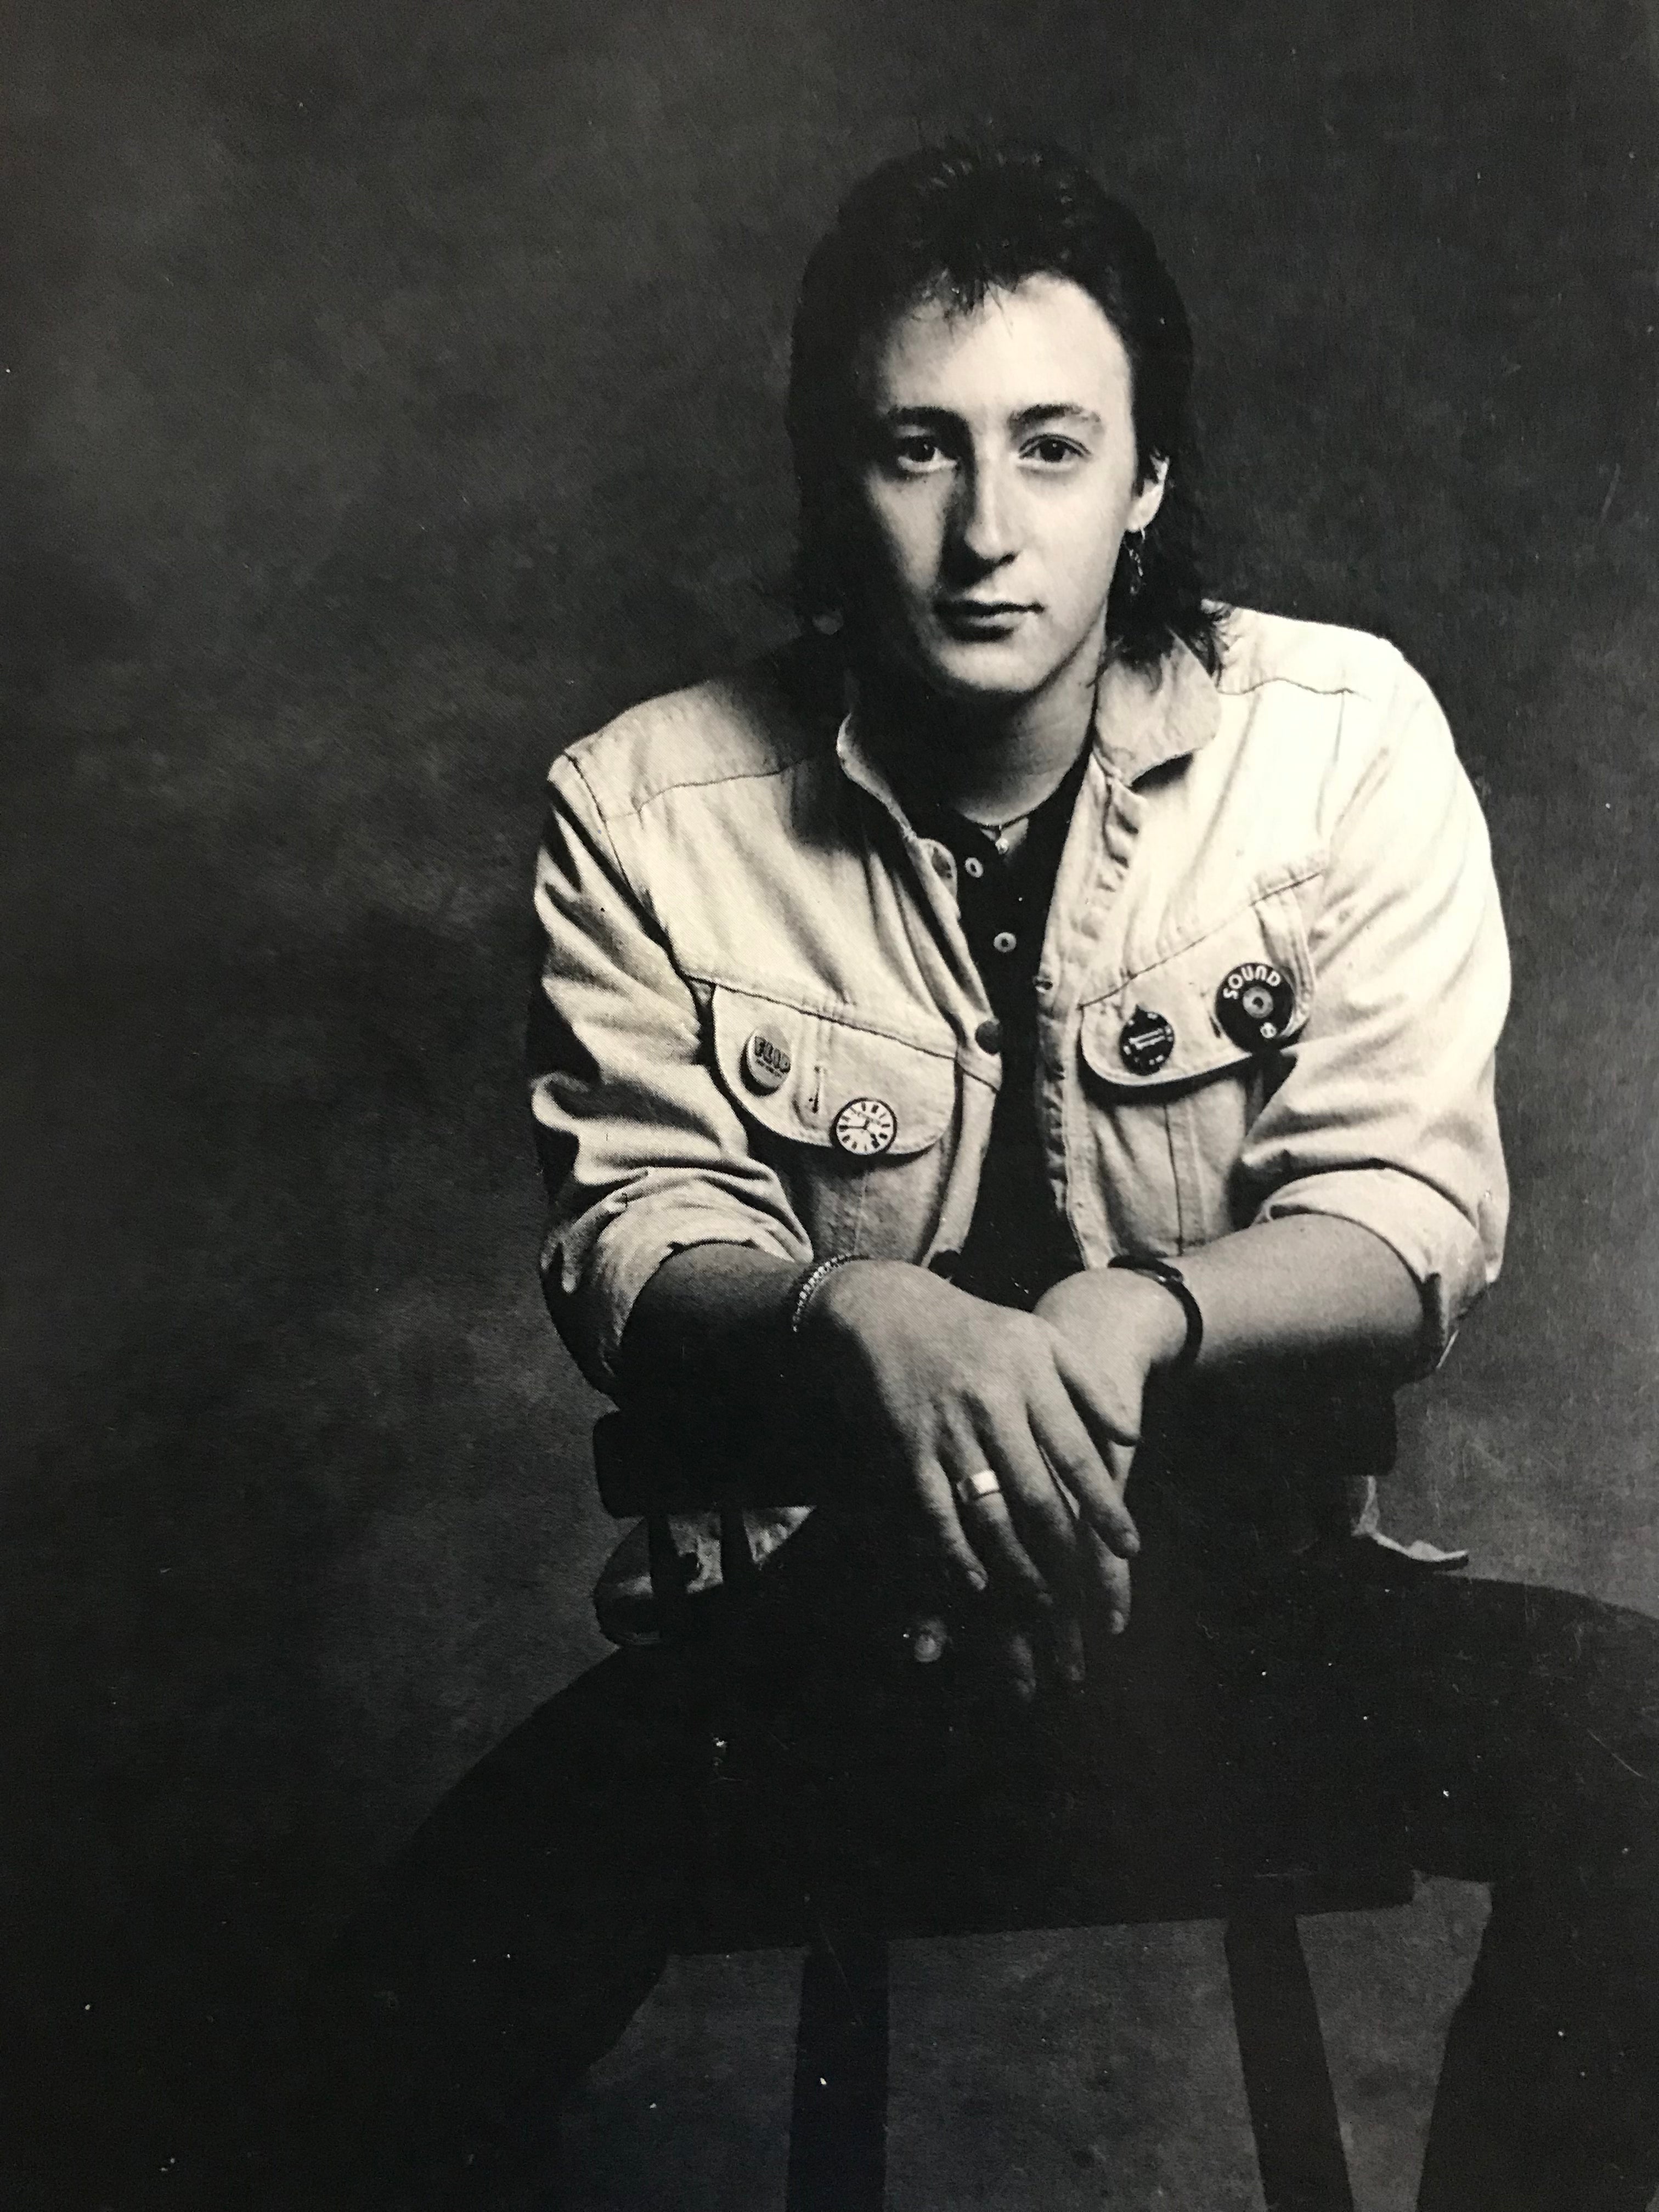 Julian Lennon Valotte Album Cover Notebook